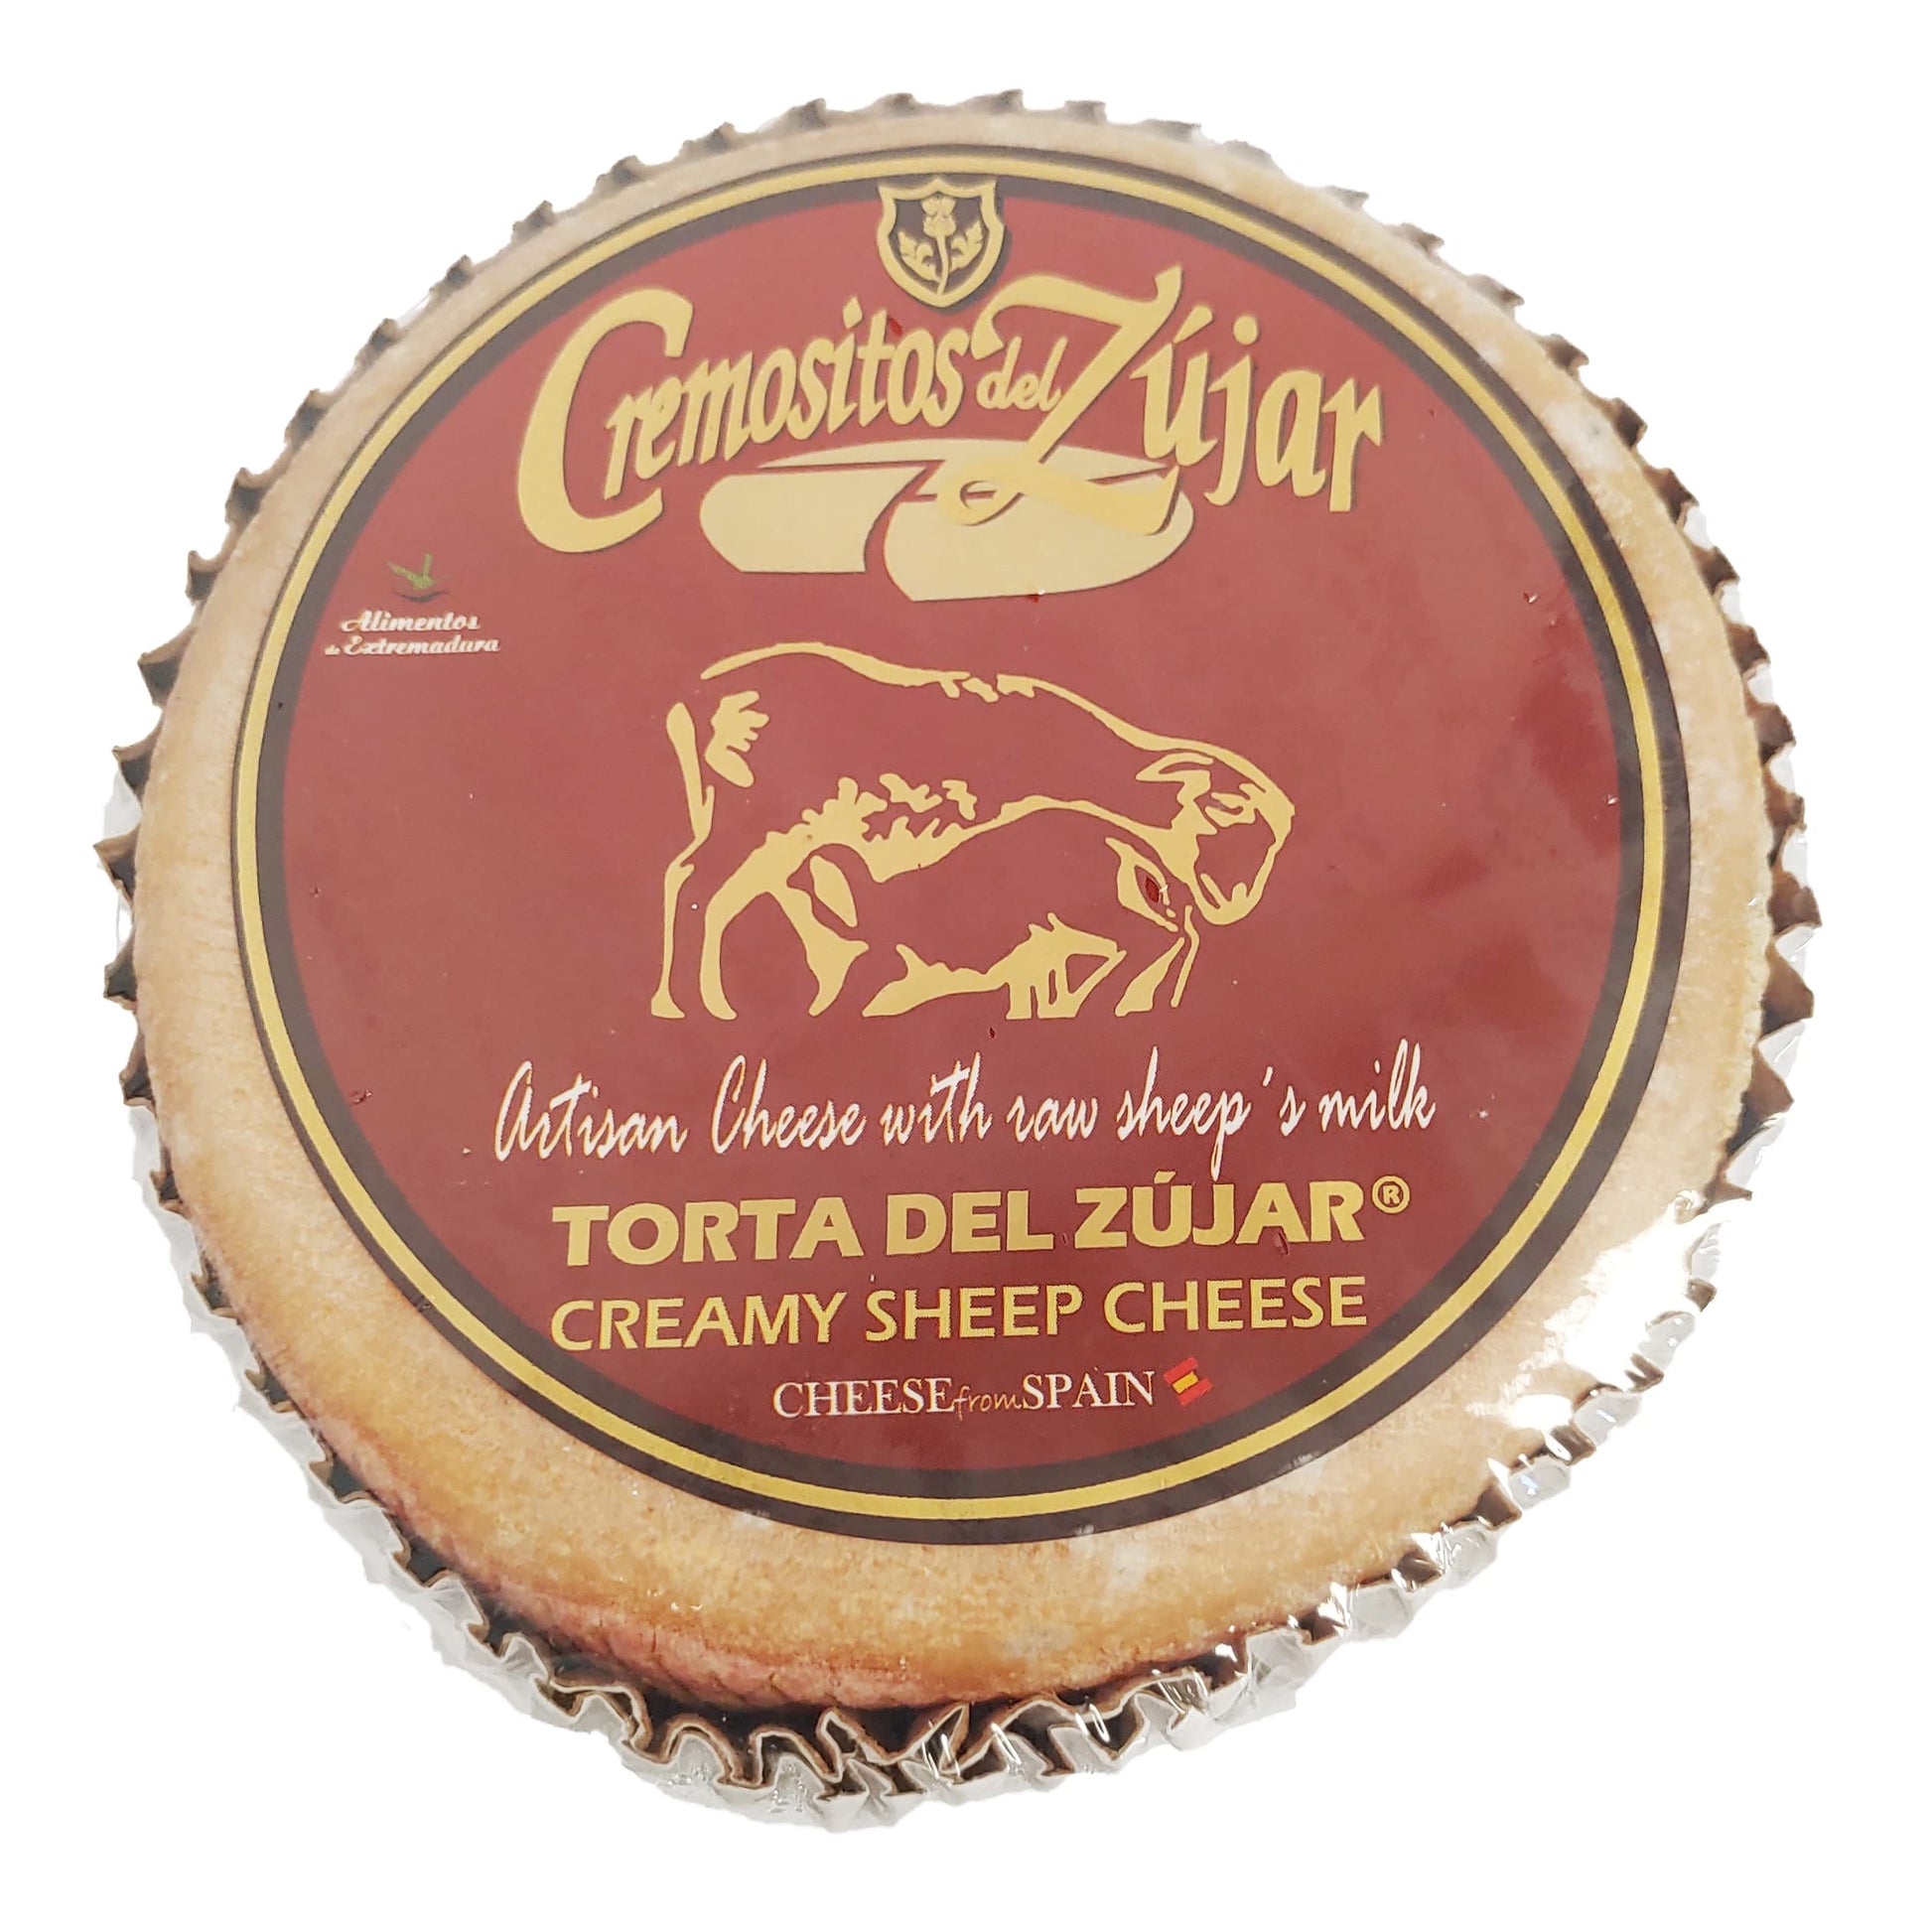 cheese Comestibles Cremositos del Zujar Queso procesado spanish cheese teruel today